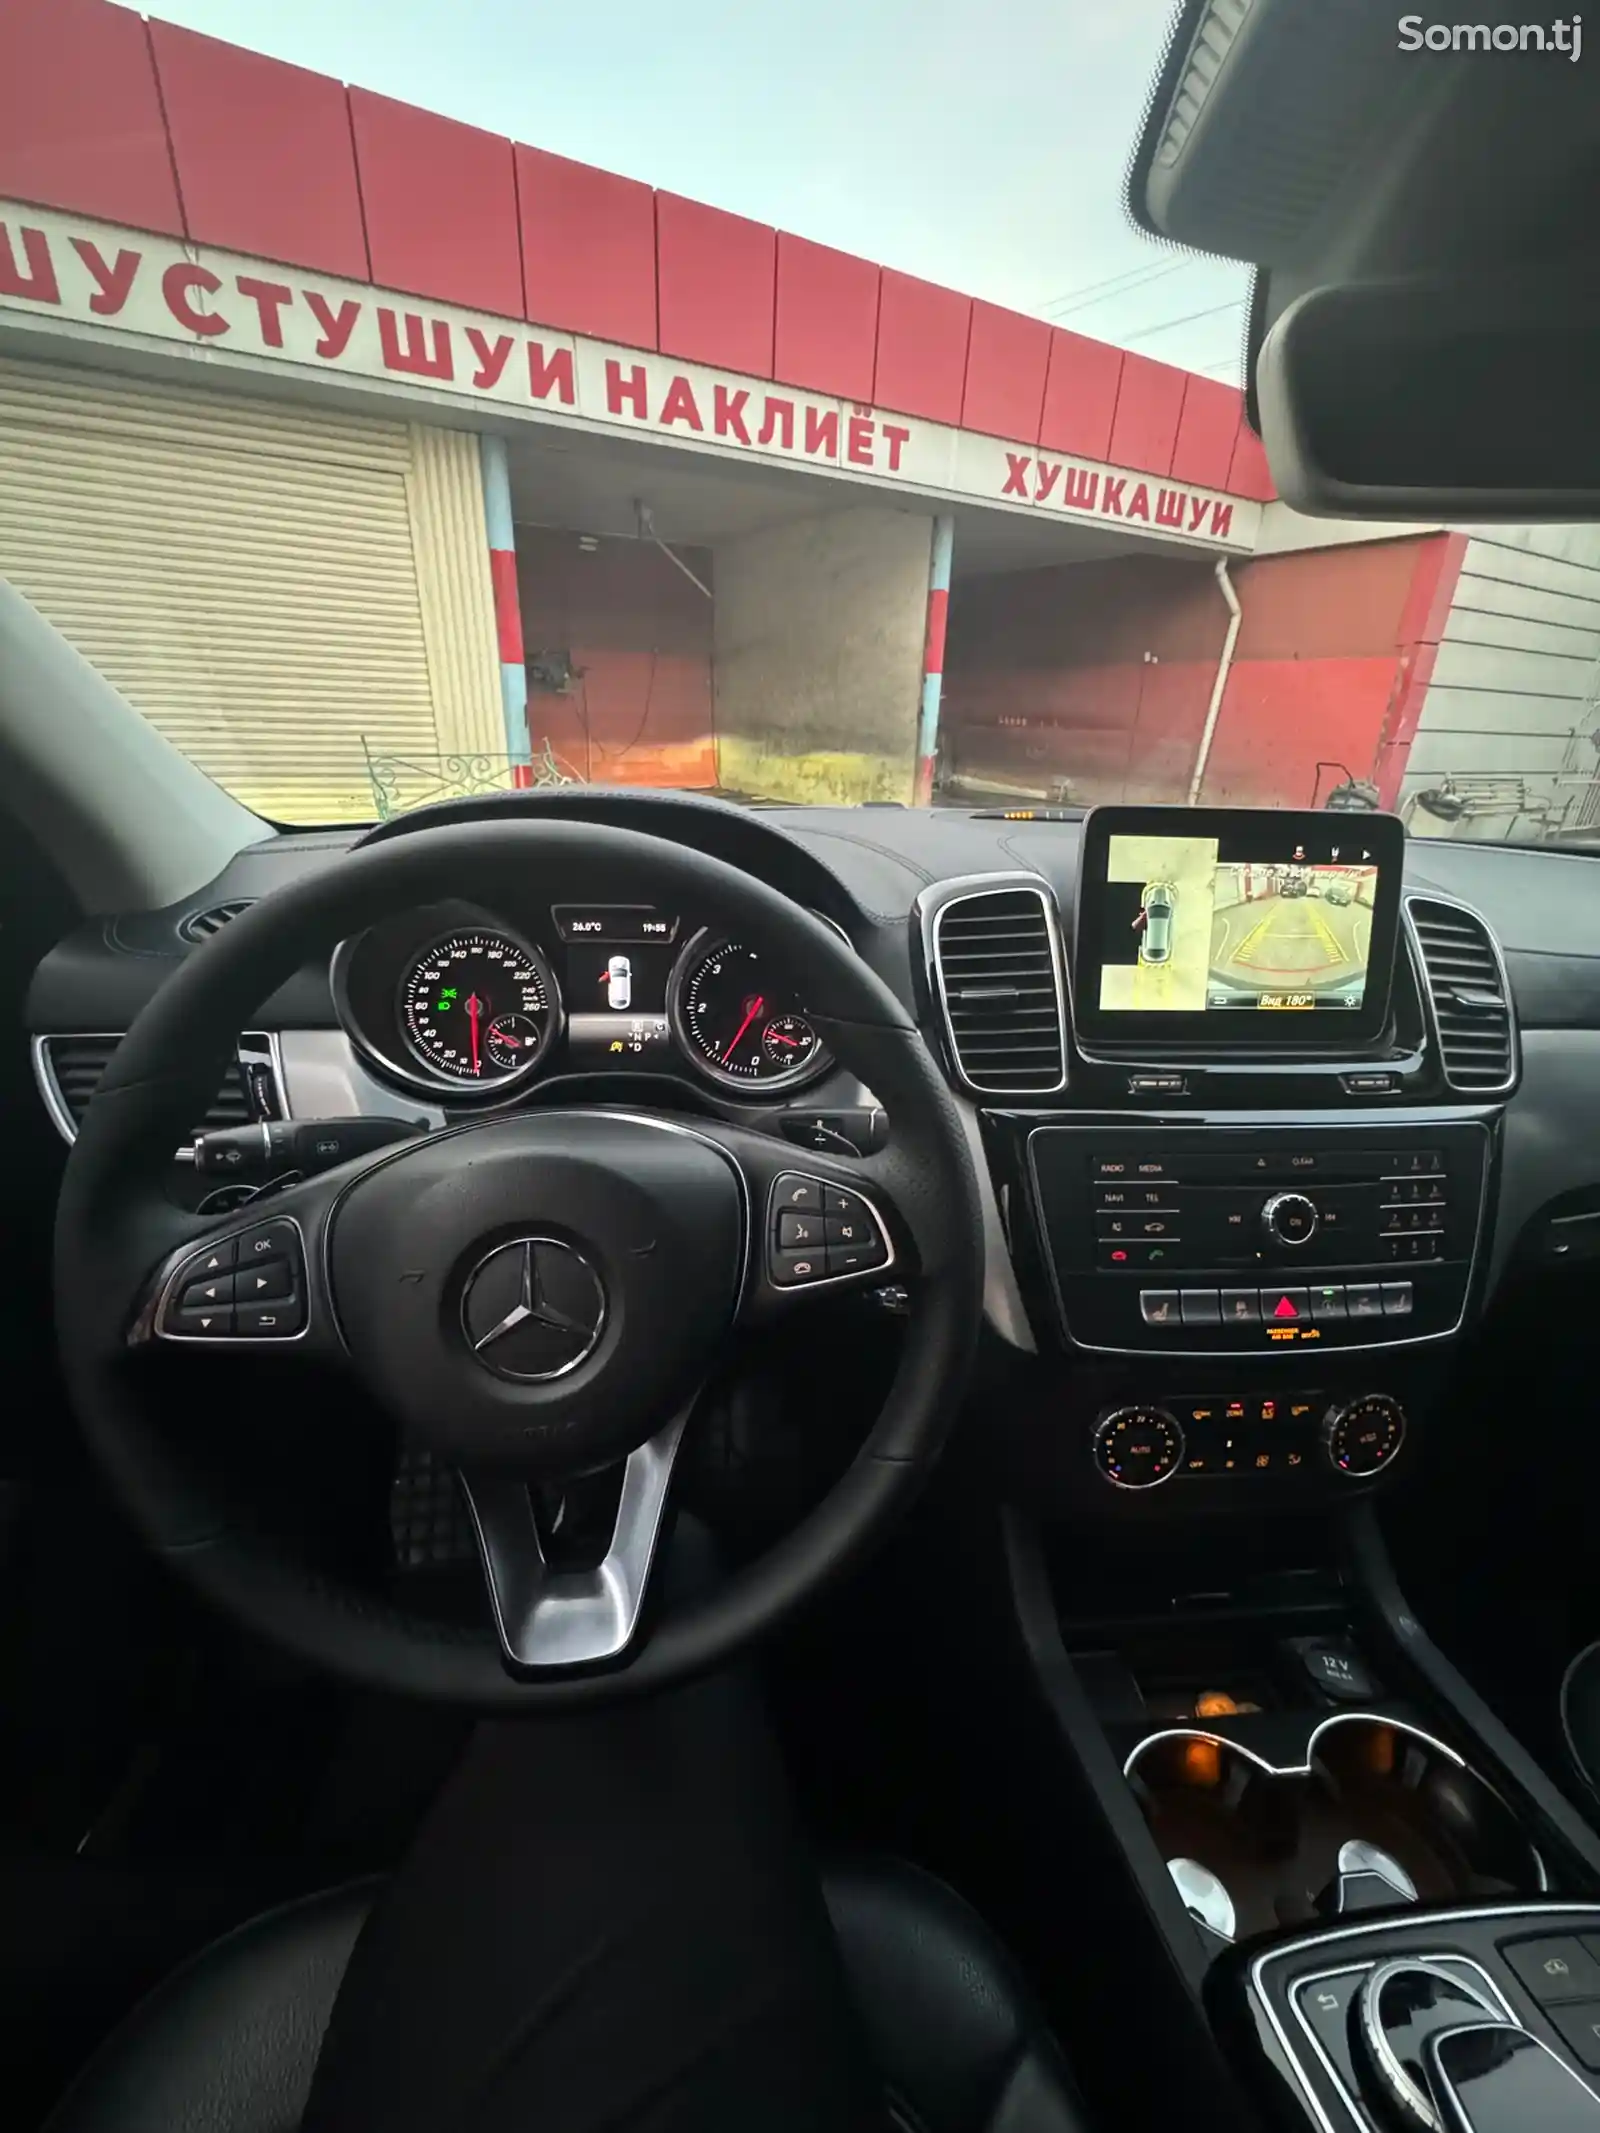 Mercedes-Benz GLE class, 2018-10